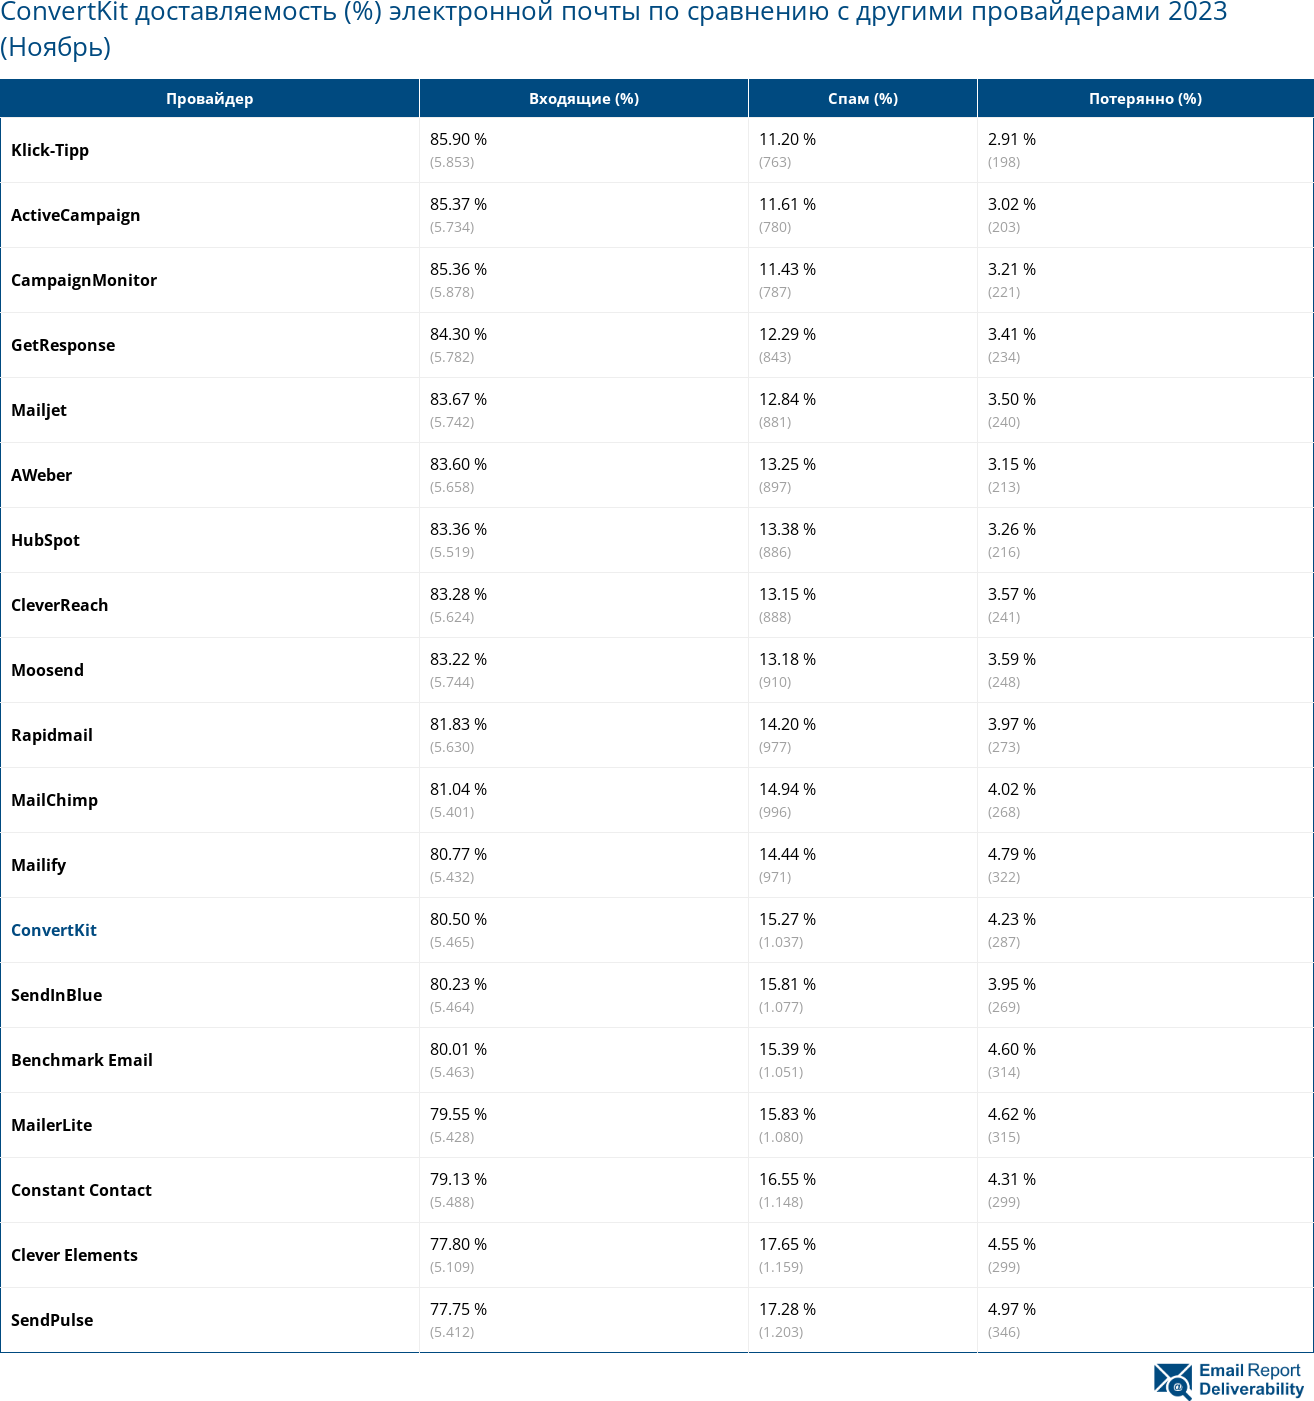 ConvertKit доставляемость (%) электронной почты по сравнению с другими провайдерами 2023 (Ноябрь)